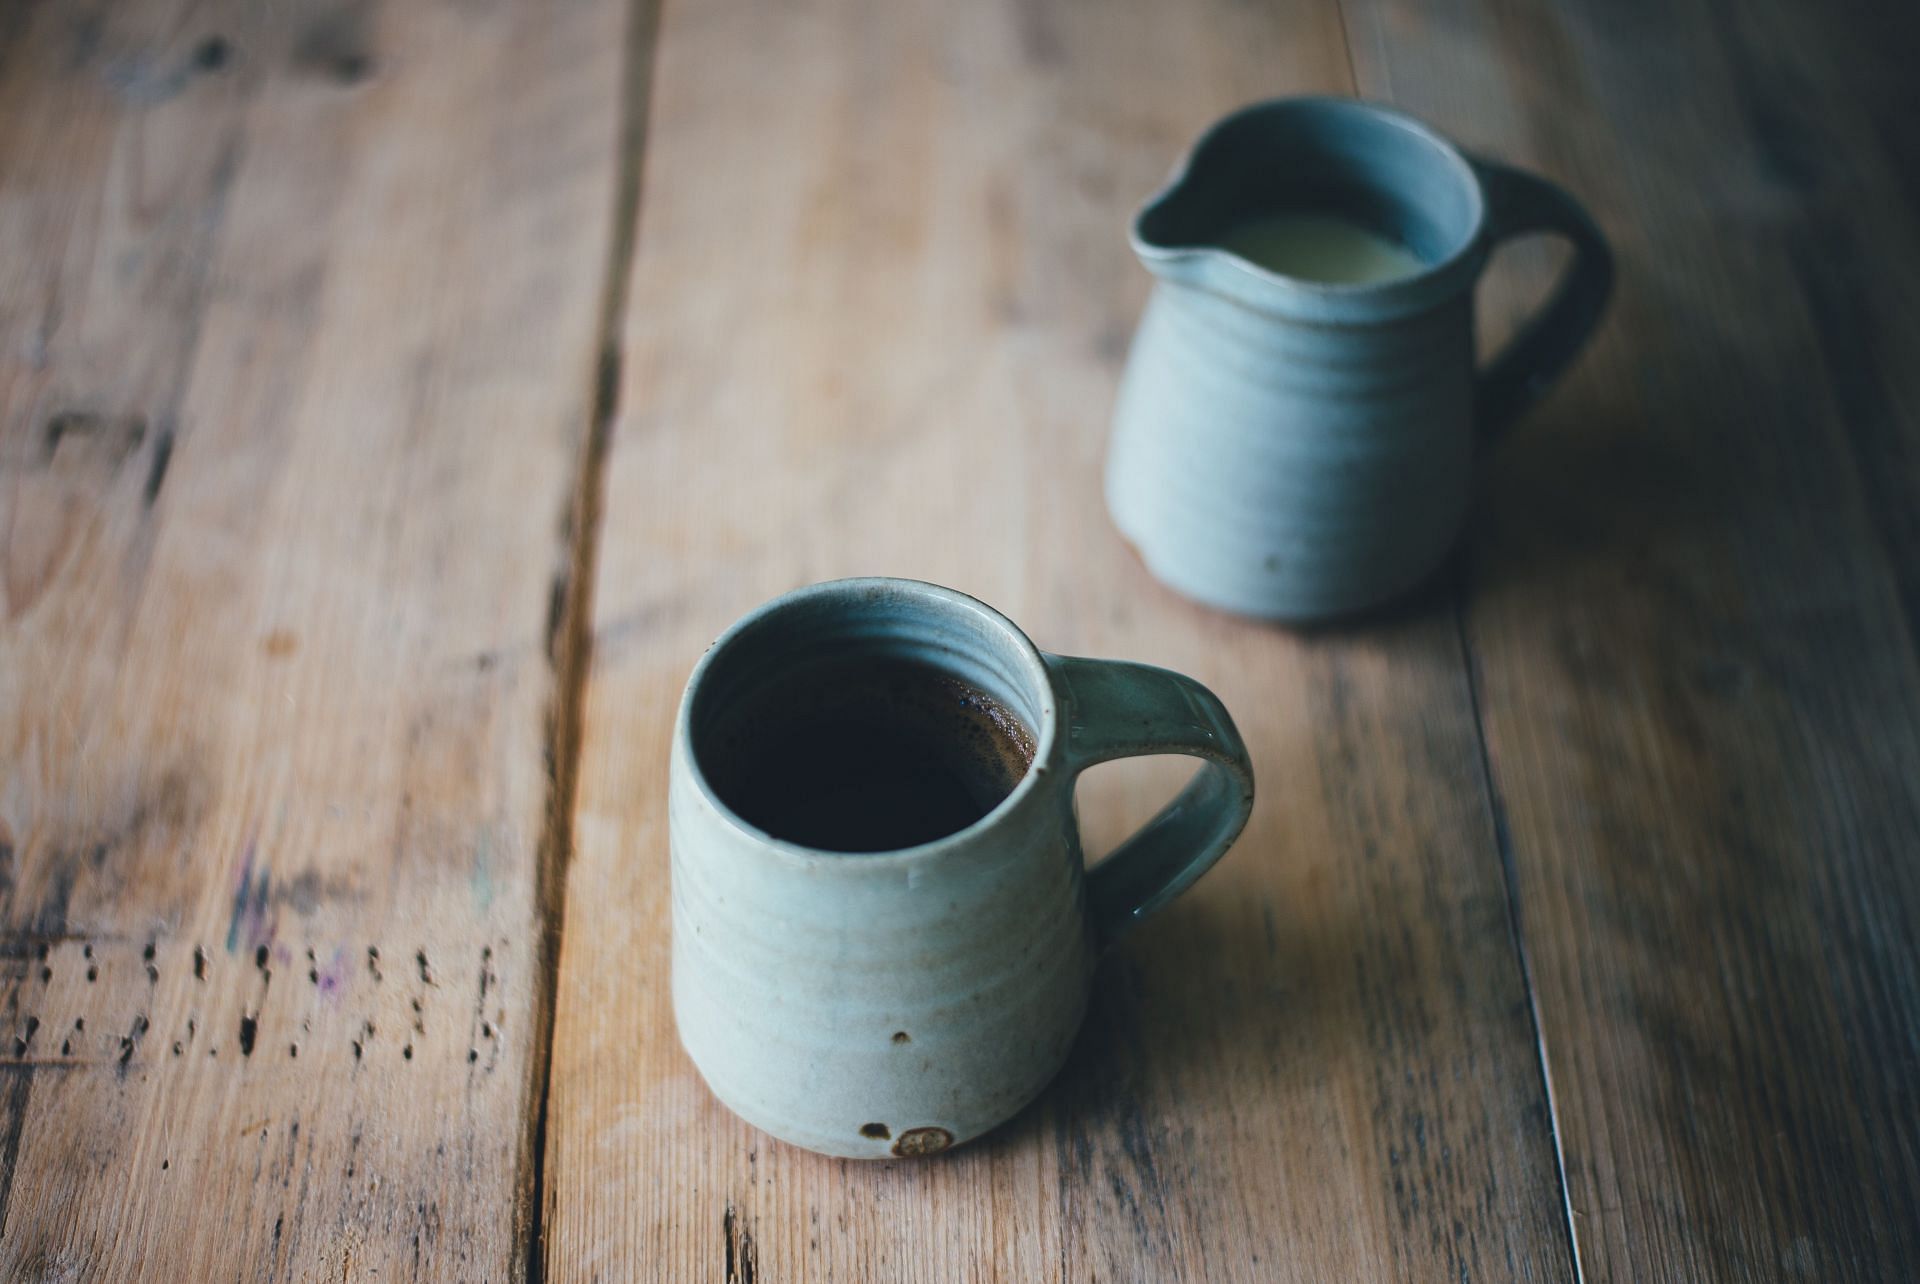 Yerba mate tea improves heart health (Image via Unsplash/Annie Spratt)